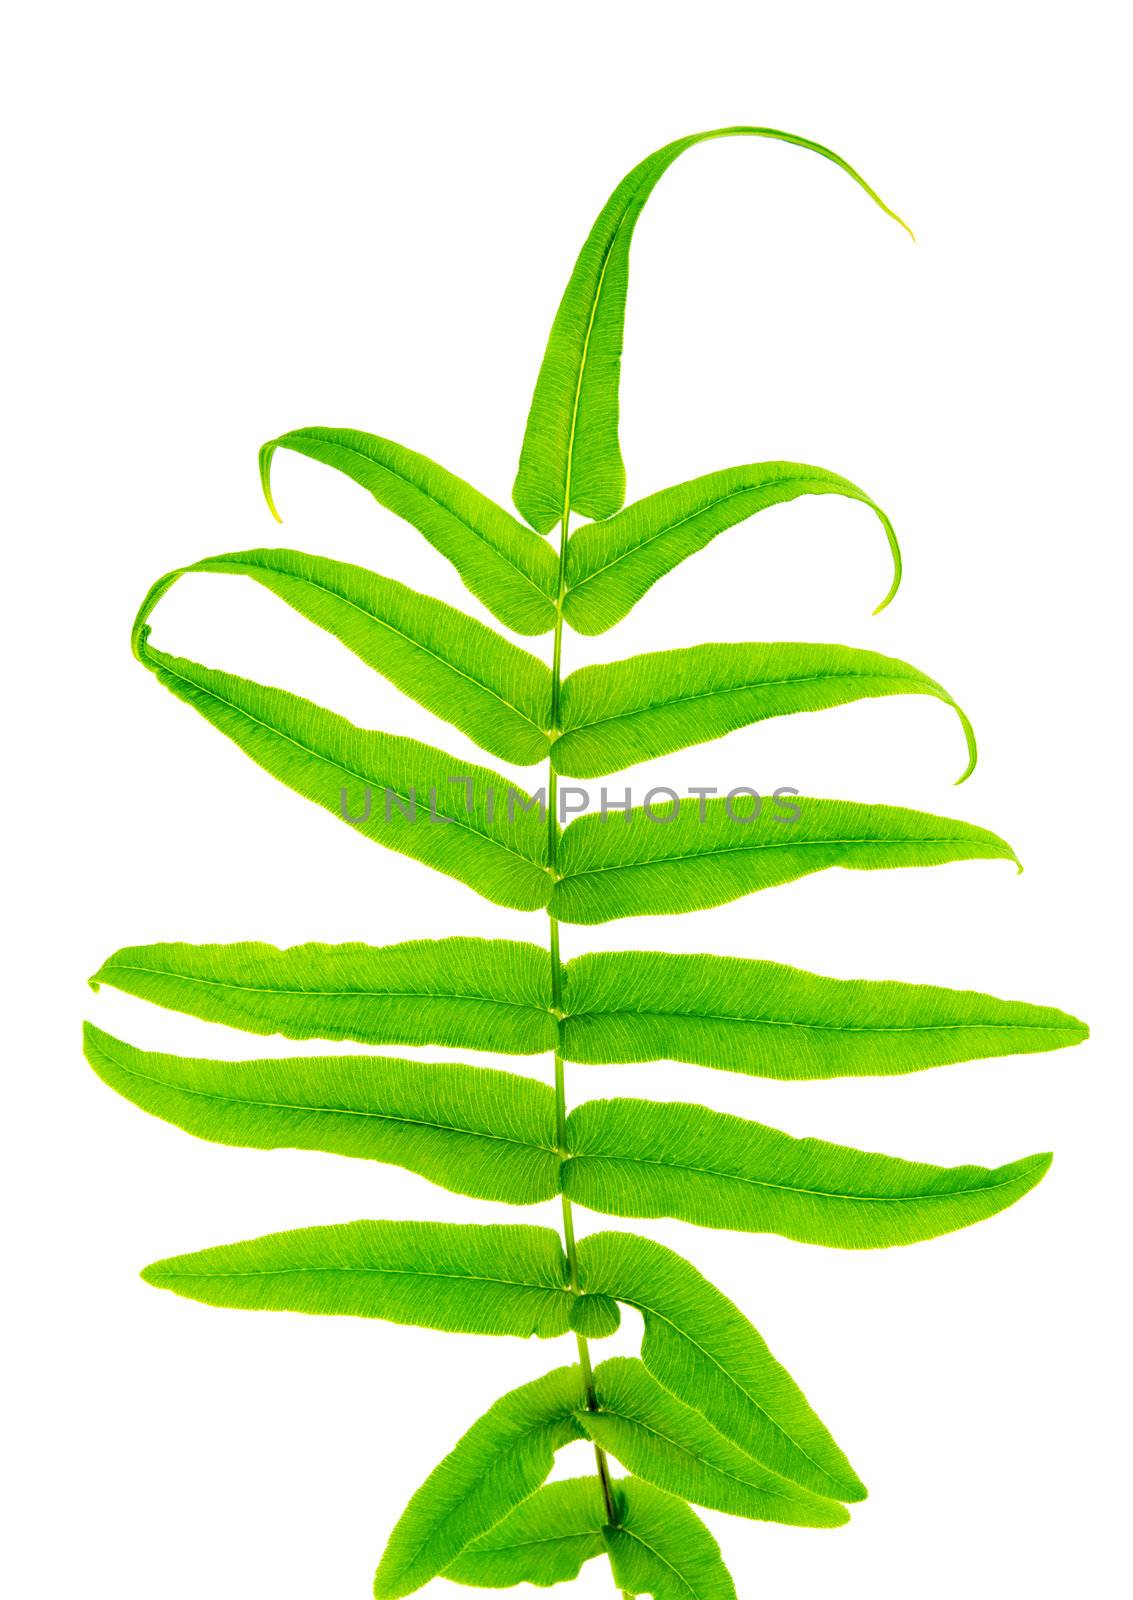 Fern leaf by szefei